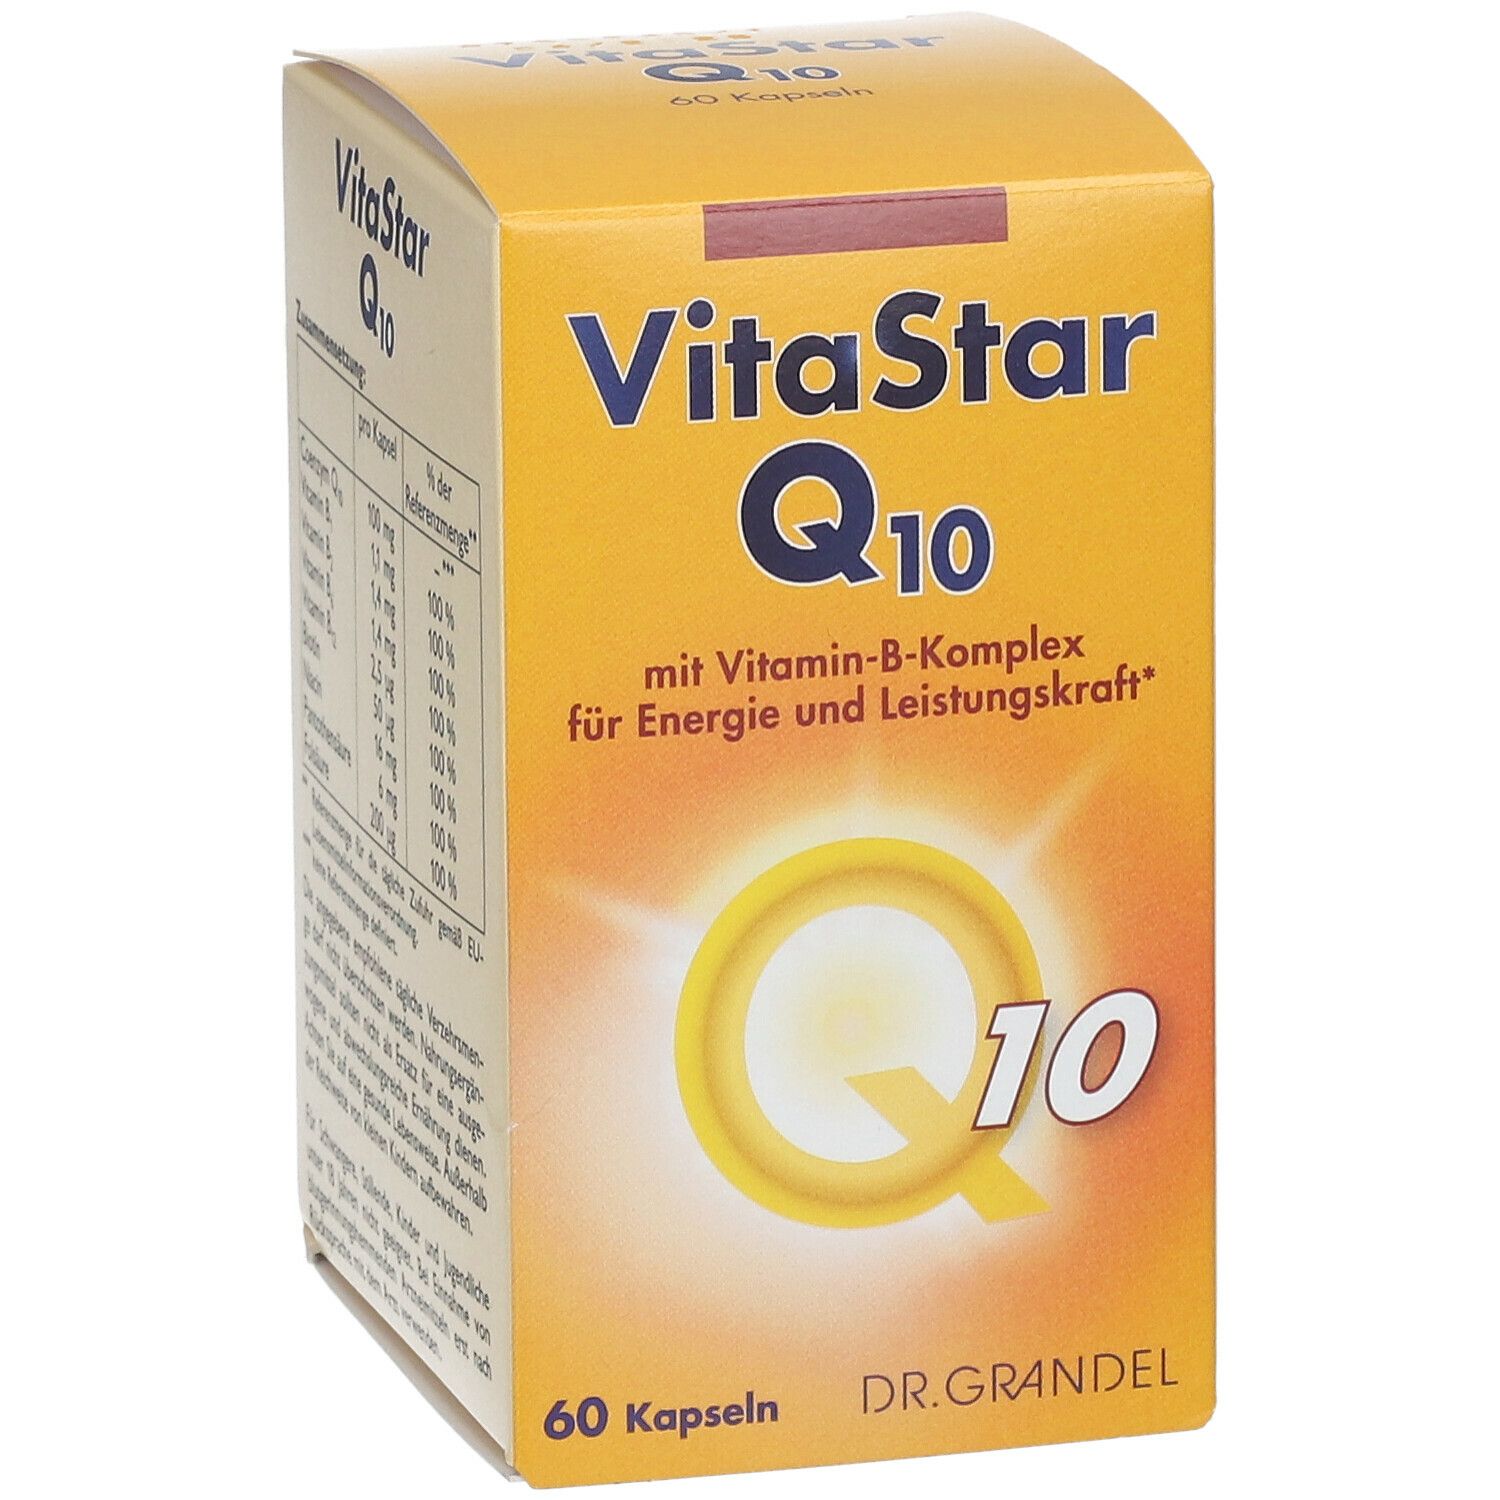 VitaStar Q10